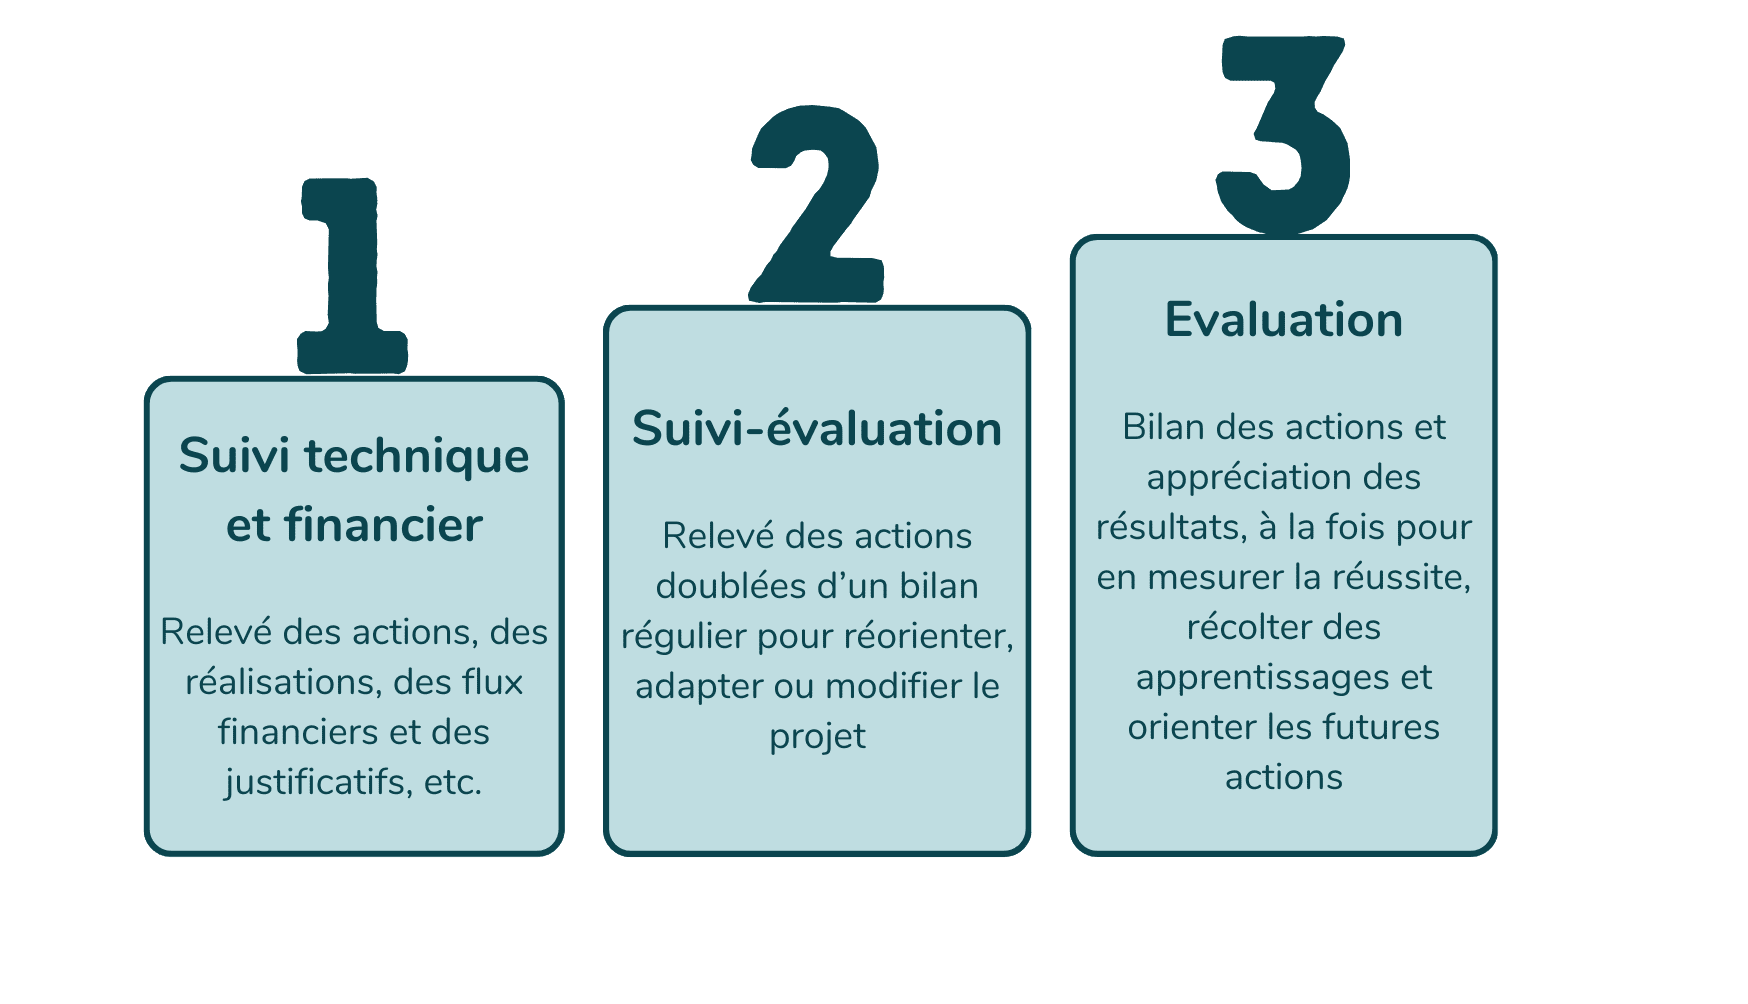 3 niveaux de suivi : technique et financier, suivi-évaluation, évaluation